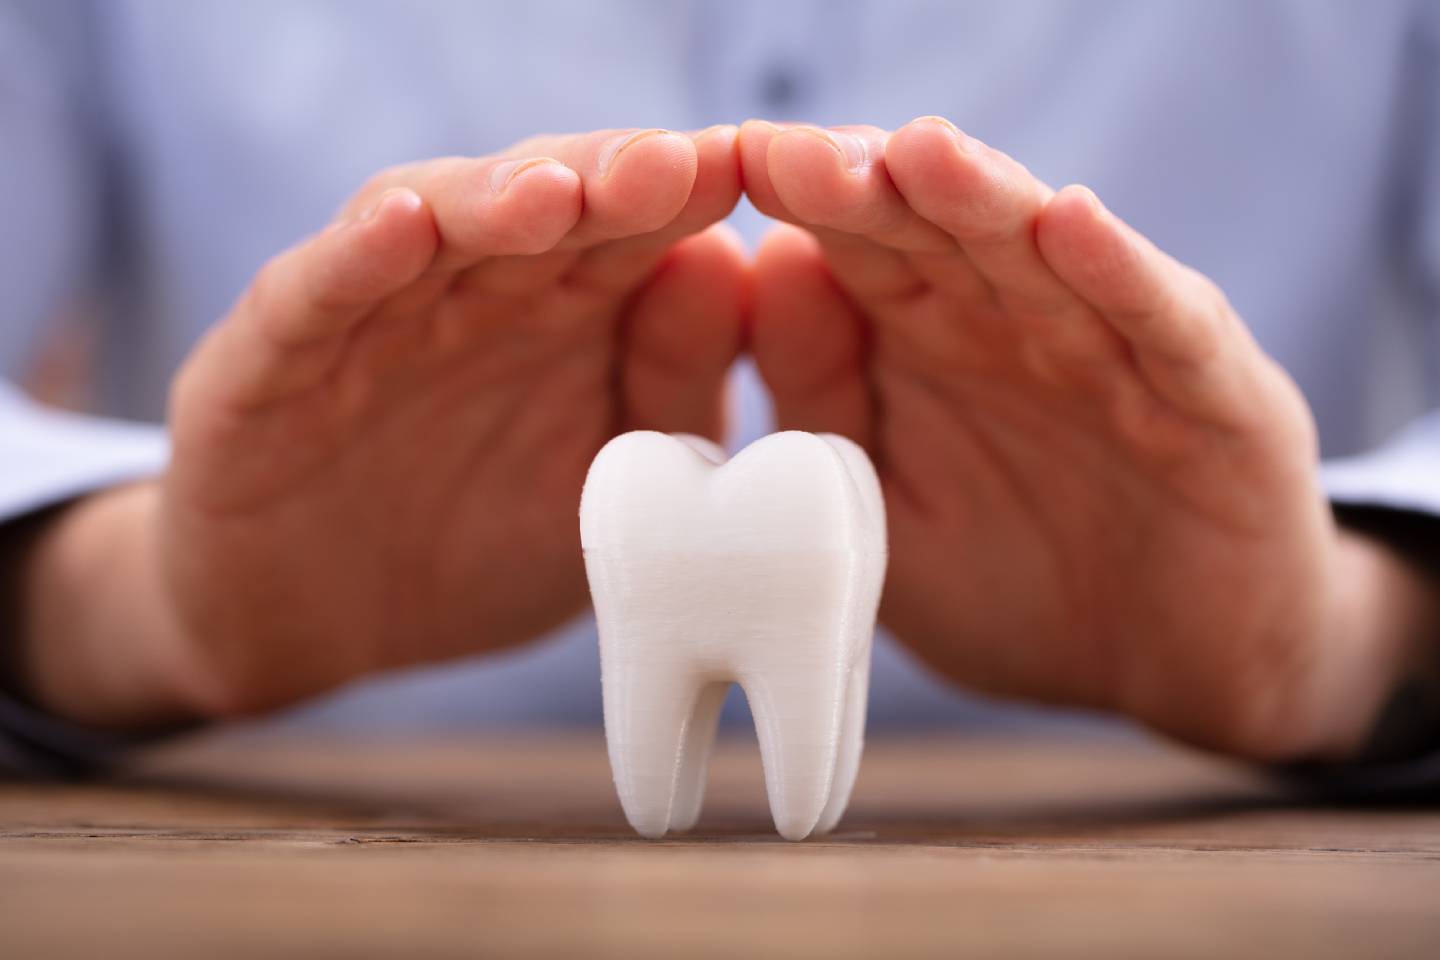 Новости Казахстана / Общество в Казахстане / Ученый из РК разработал технологию для восстановления разрушенной зубной эмали